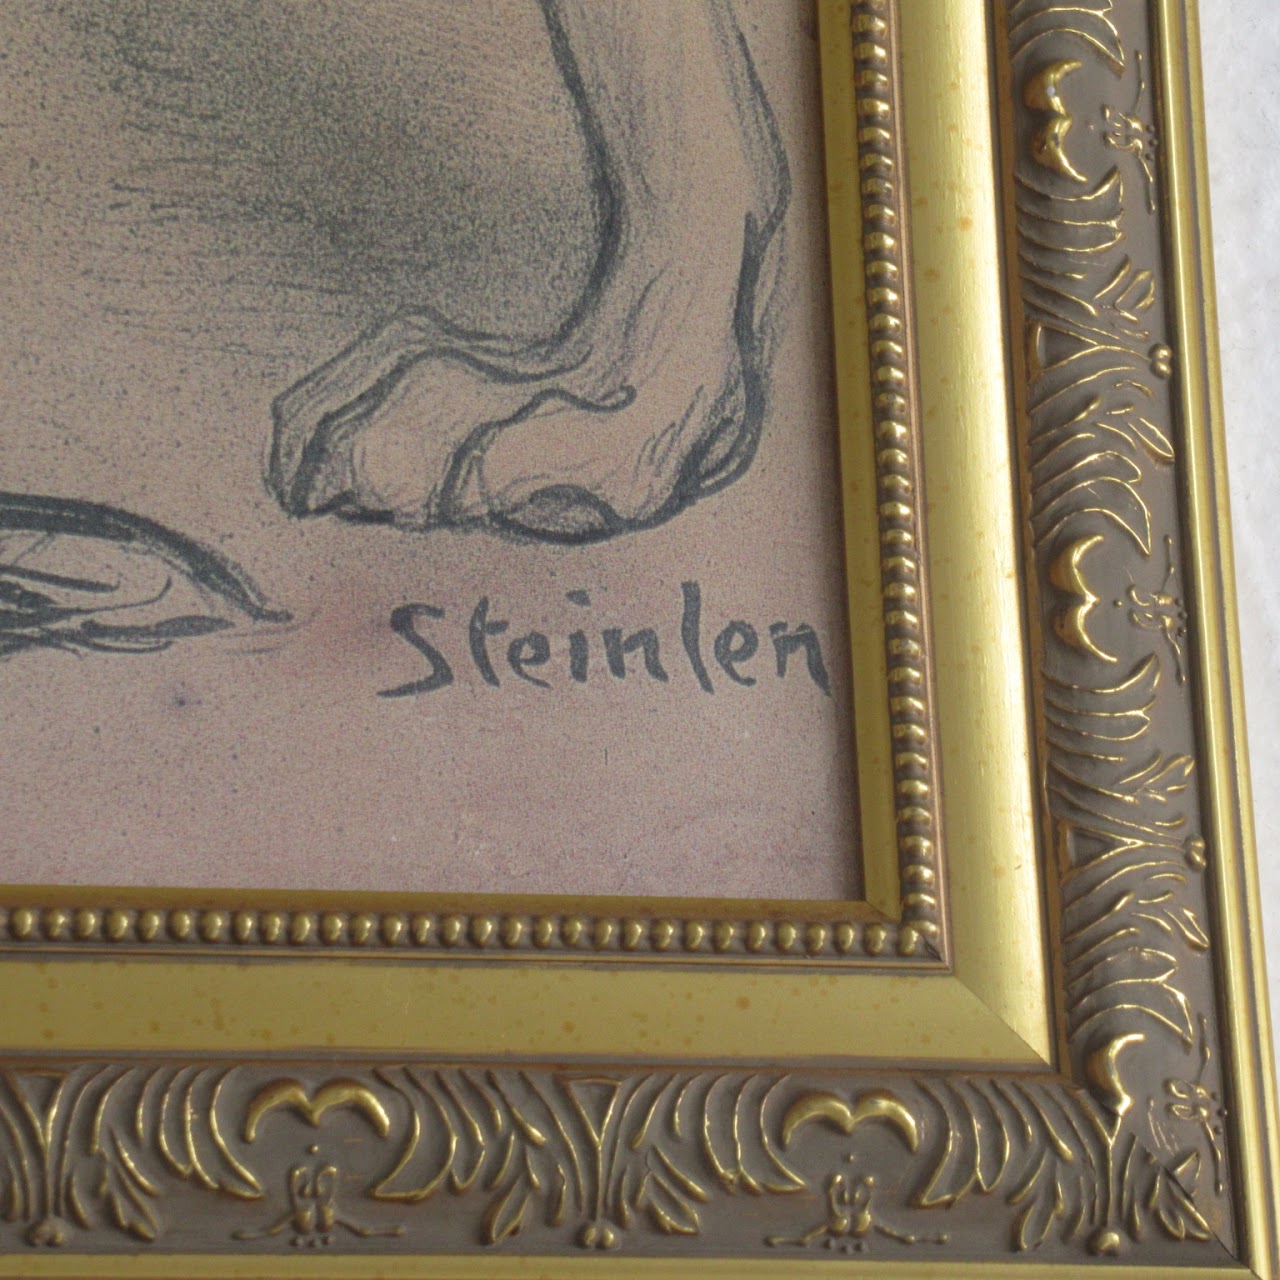 Théophile Alexandre Steinlen 'Clinique Chéron' Reproduction Poster